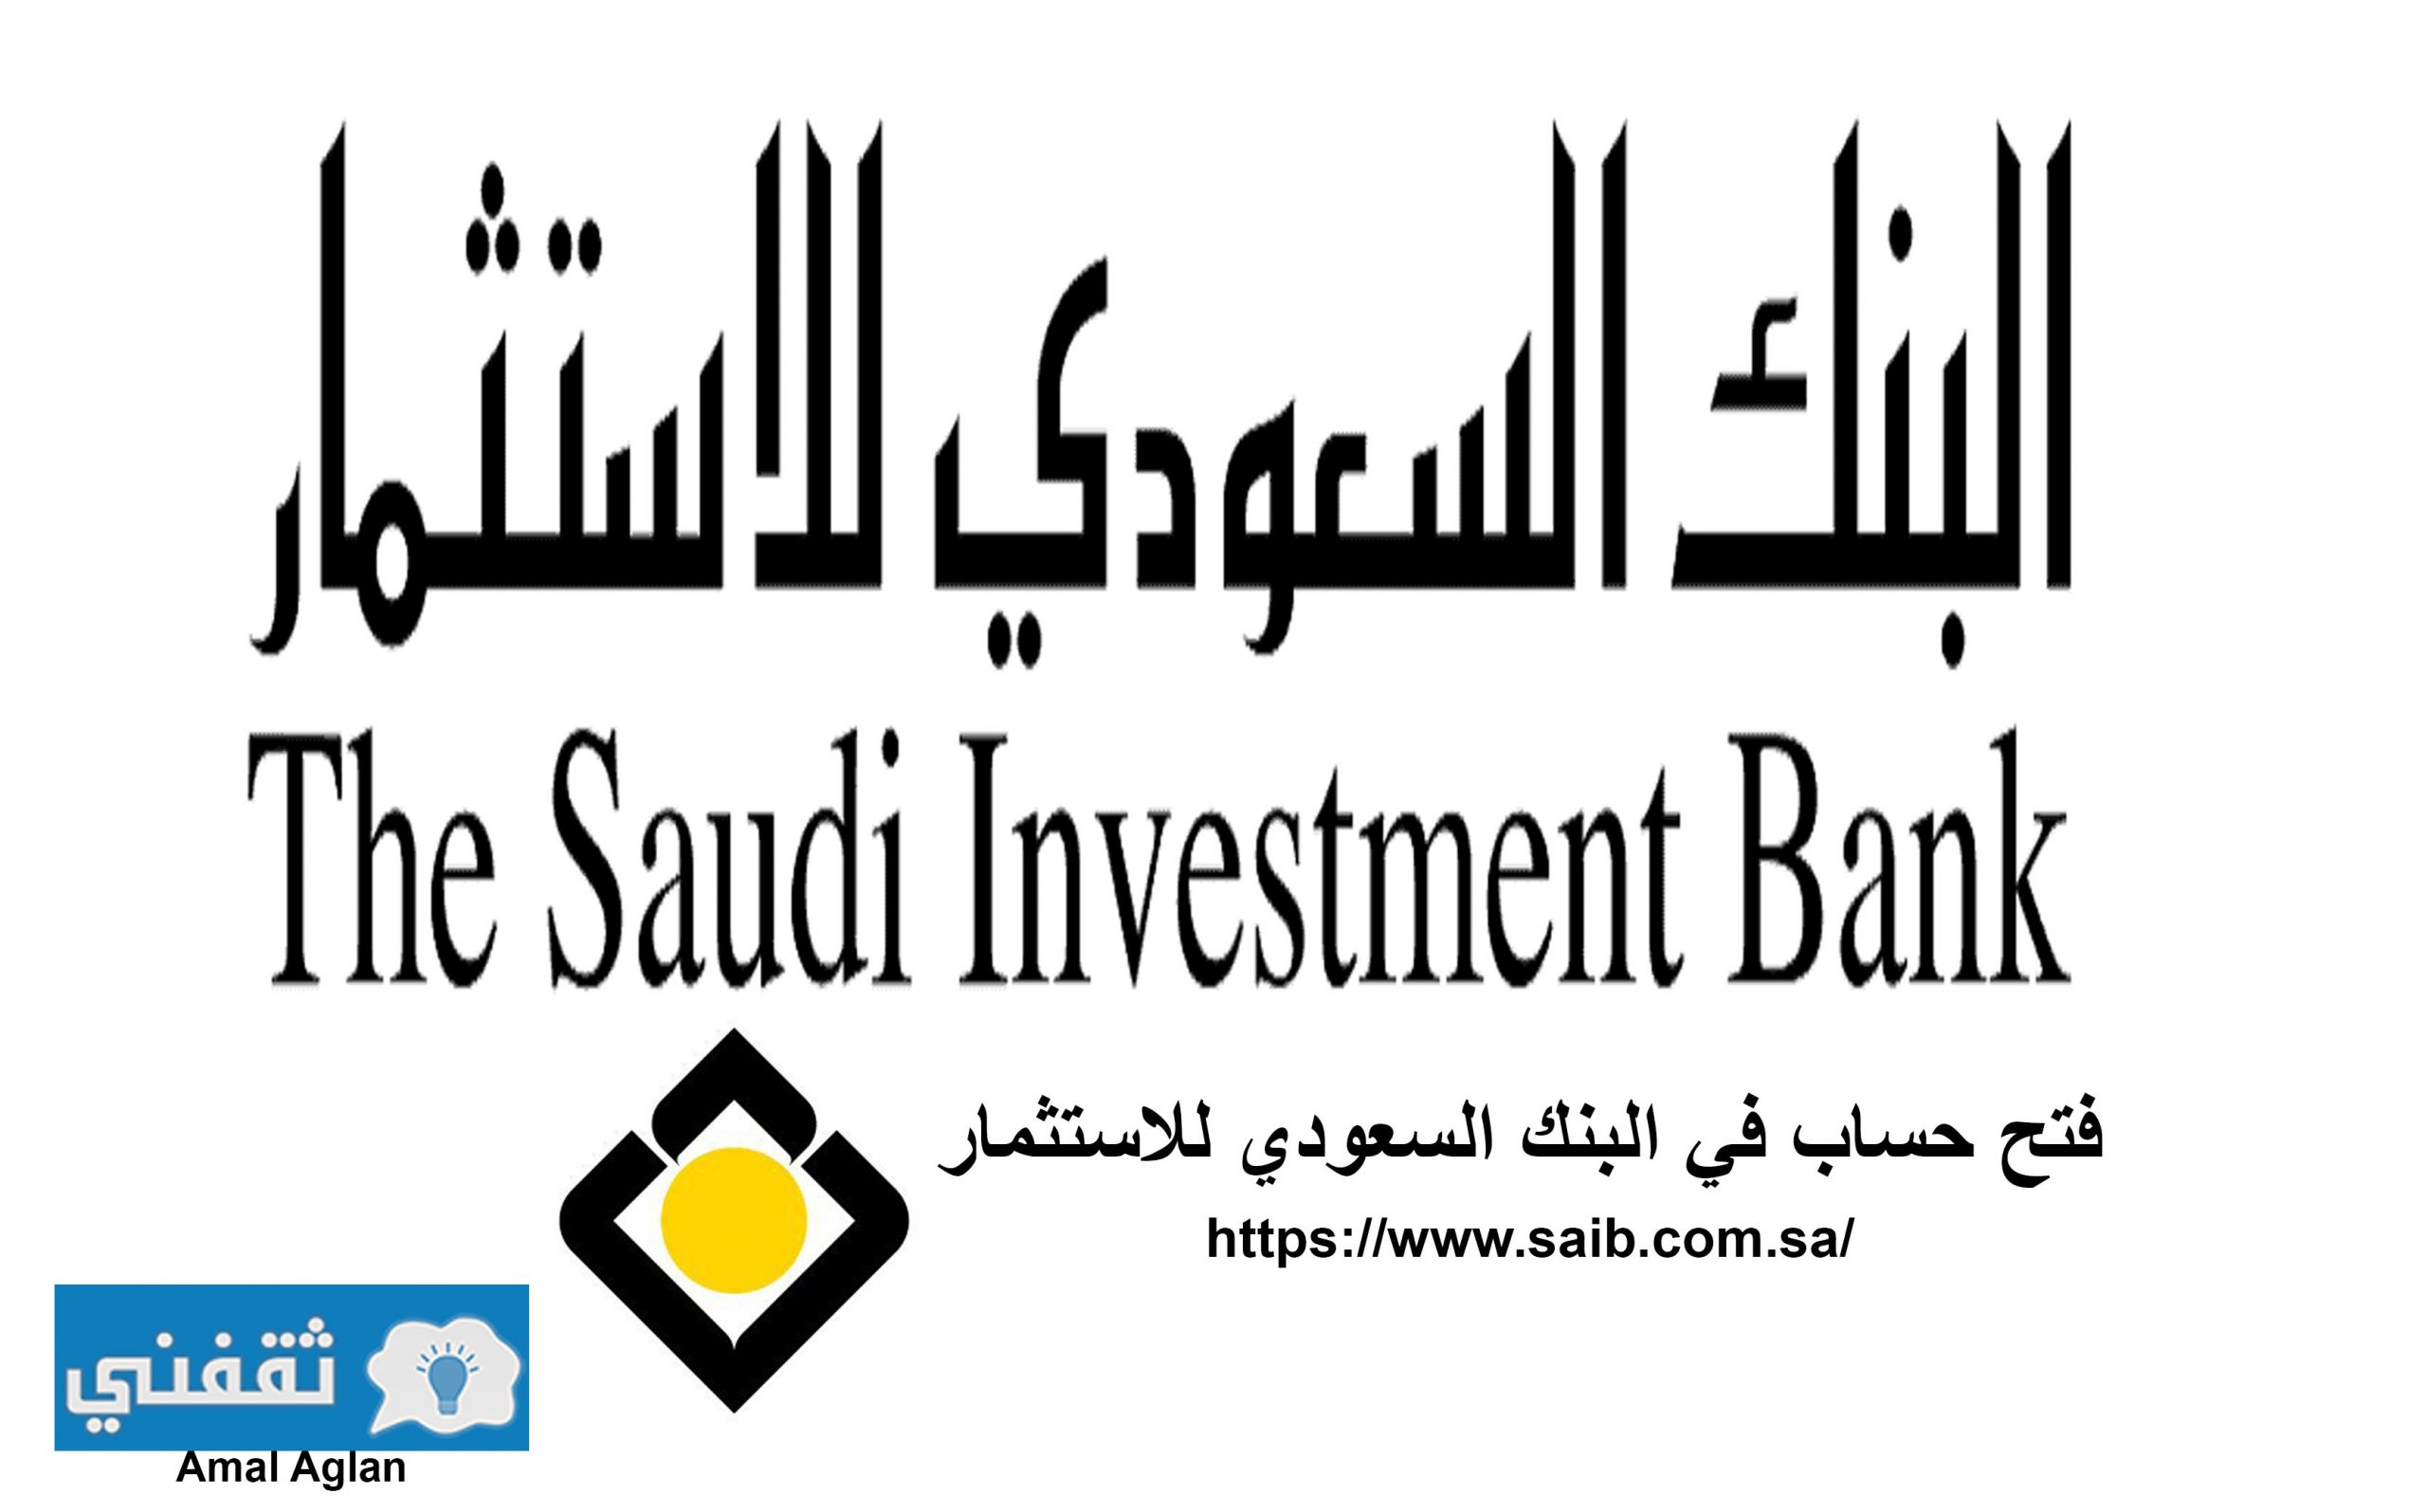 شروط فتح حساب في البنك السعودي للاستثمار وخطواته ثقفني